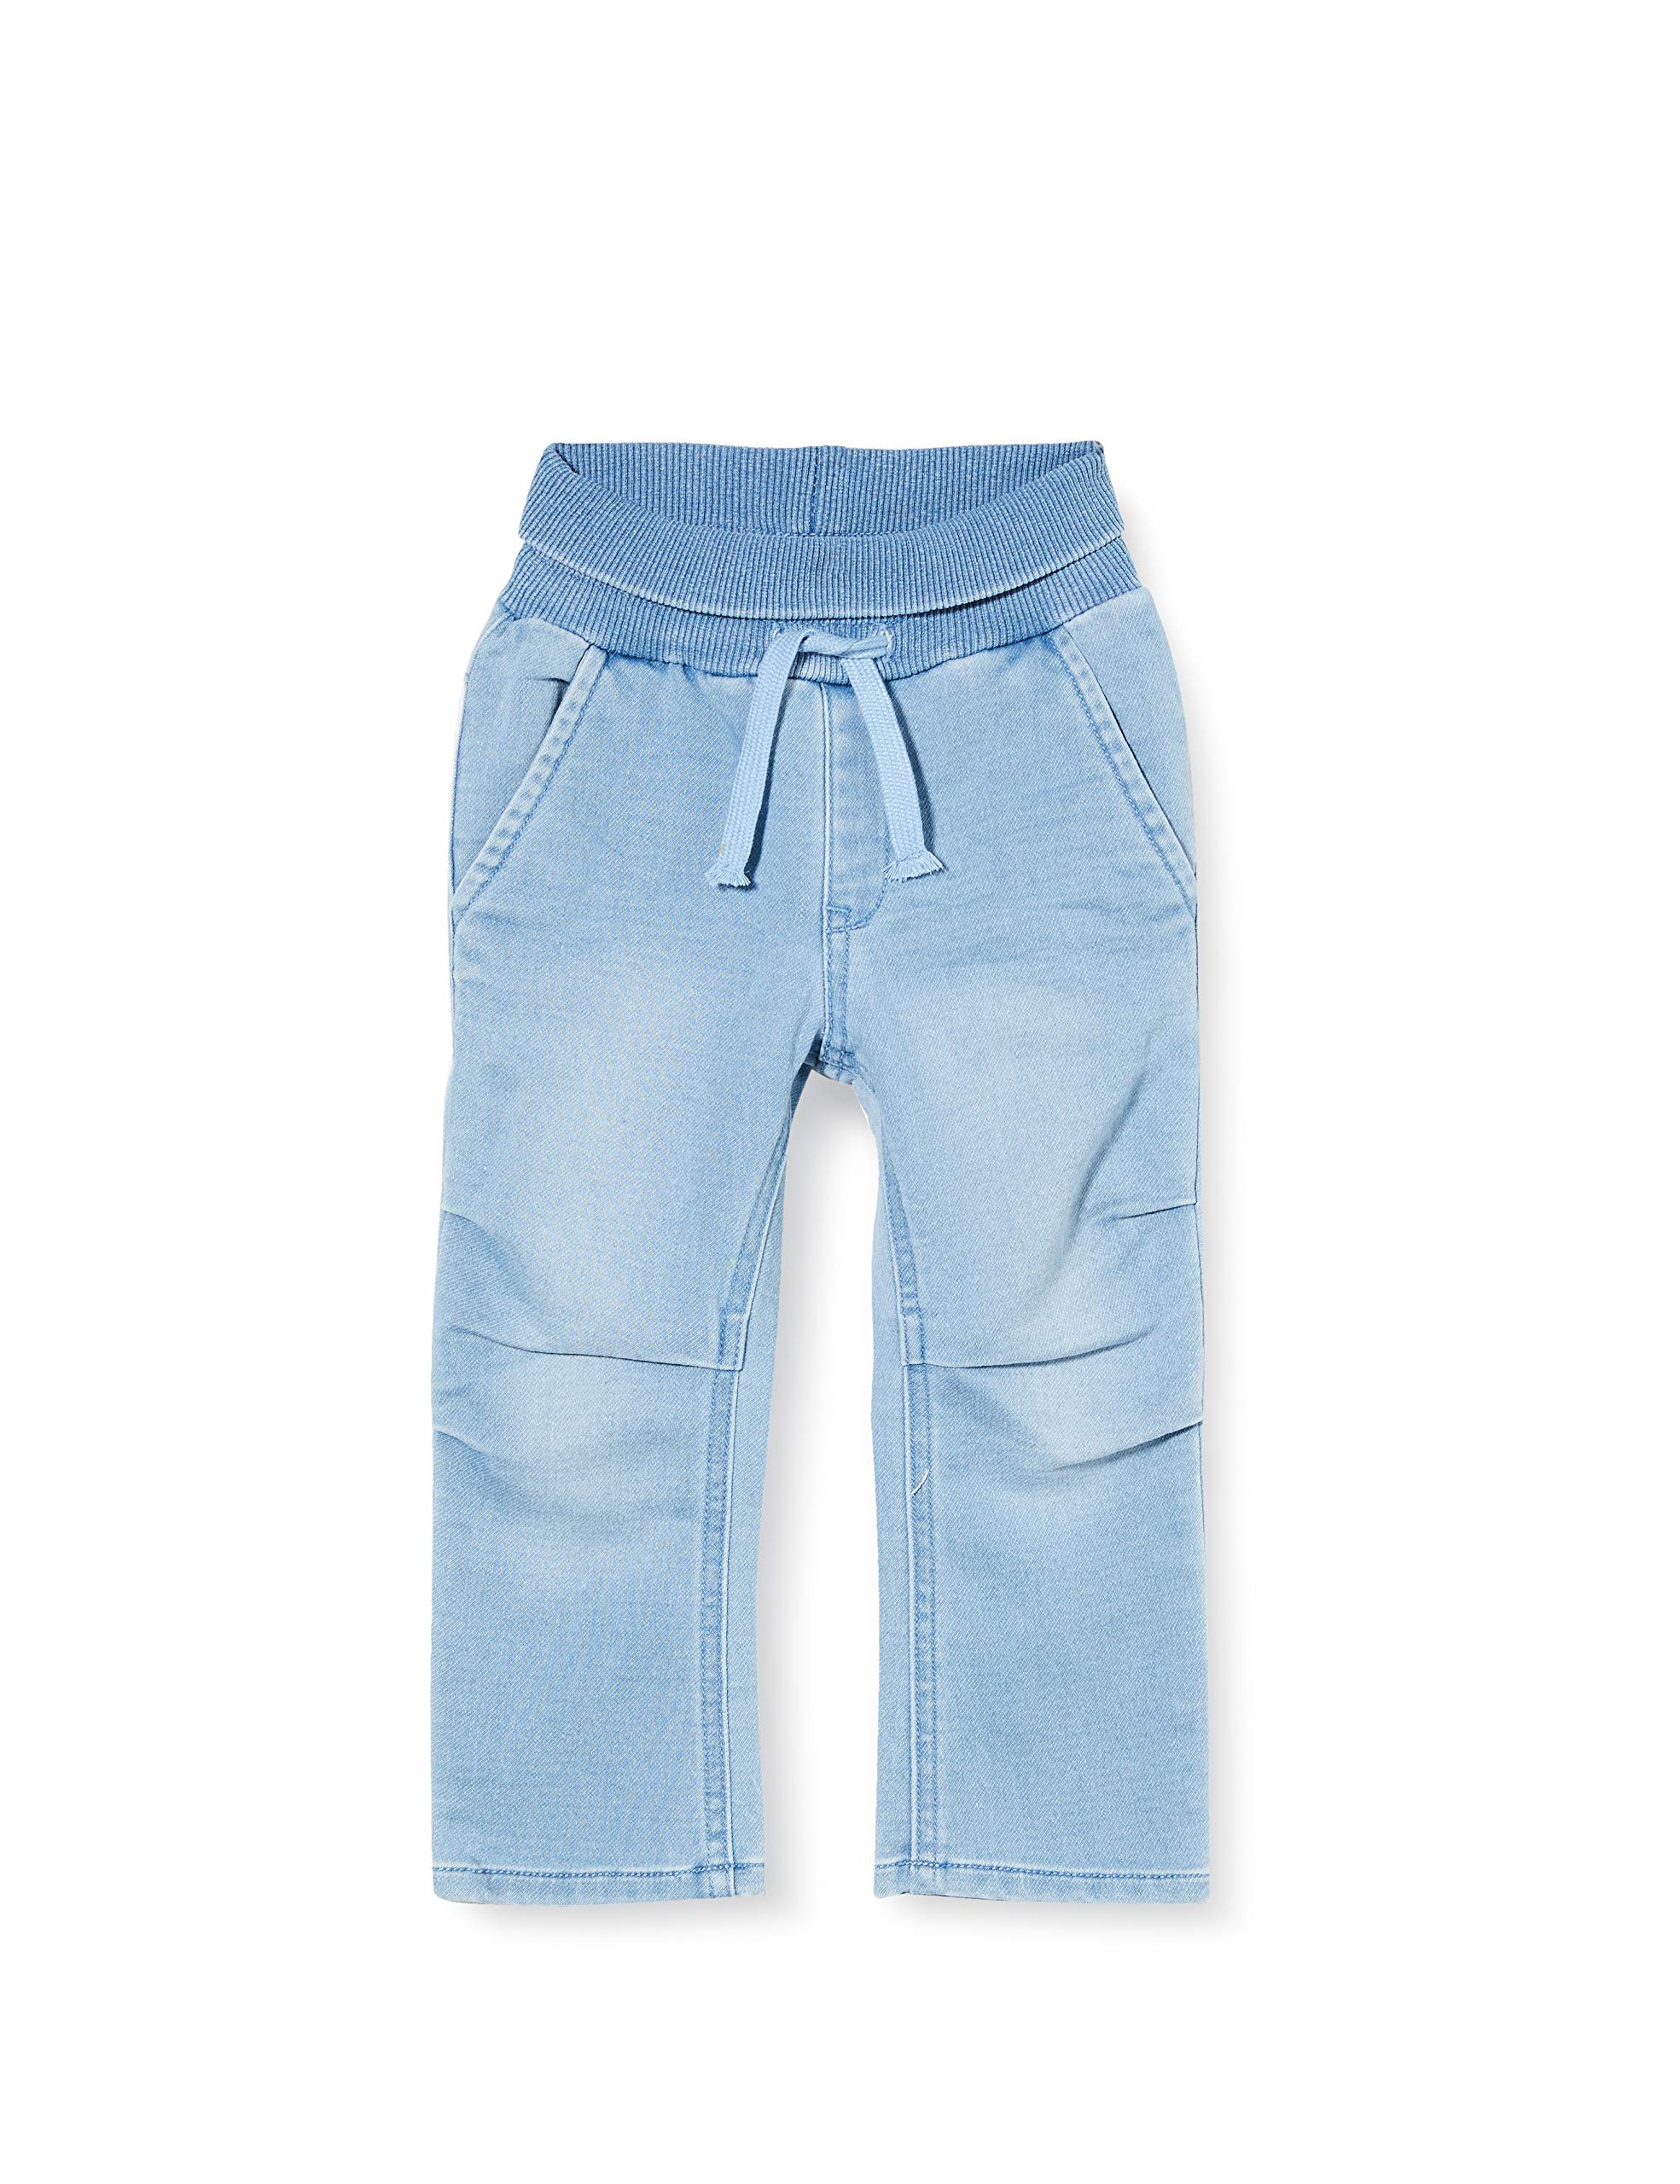 sigikid Baby Jeans mit elastischem Ripp-Schlupfbund zum Umschlagen und Bindebändchen - Softe Sweat Denim-Qualität und bequeme Passform, für Mädchen und Jungen, Größe 62 - 98